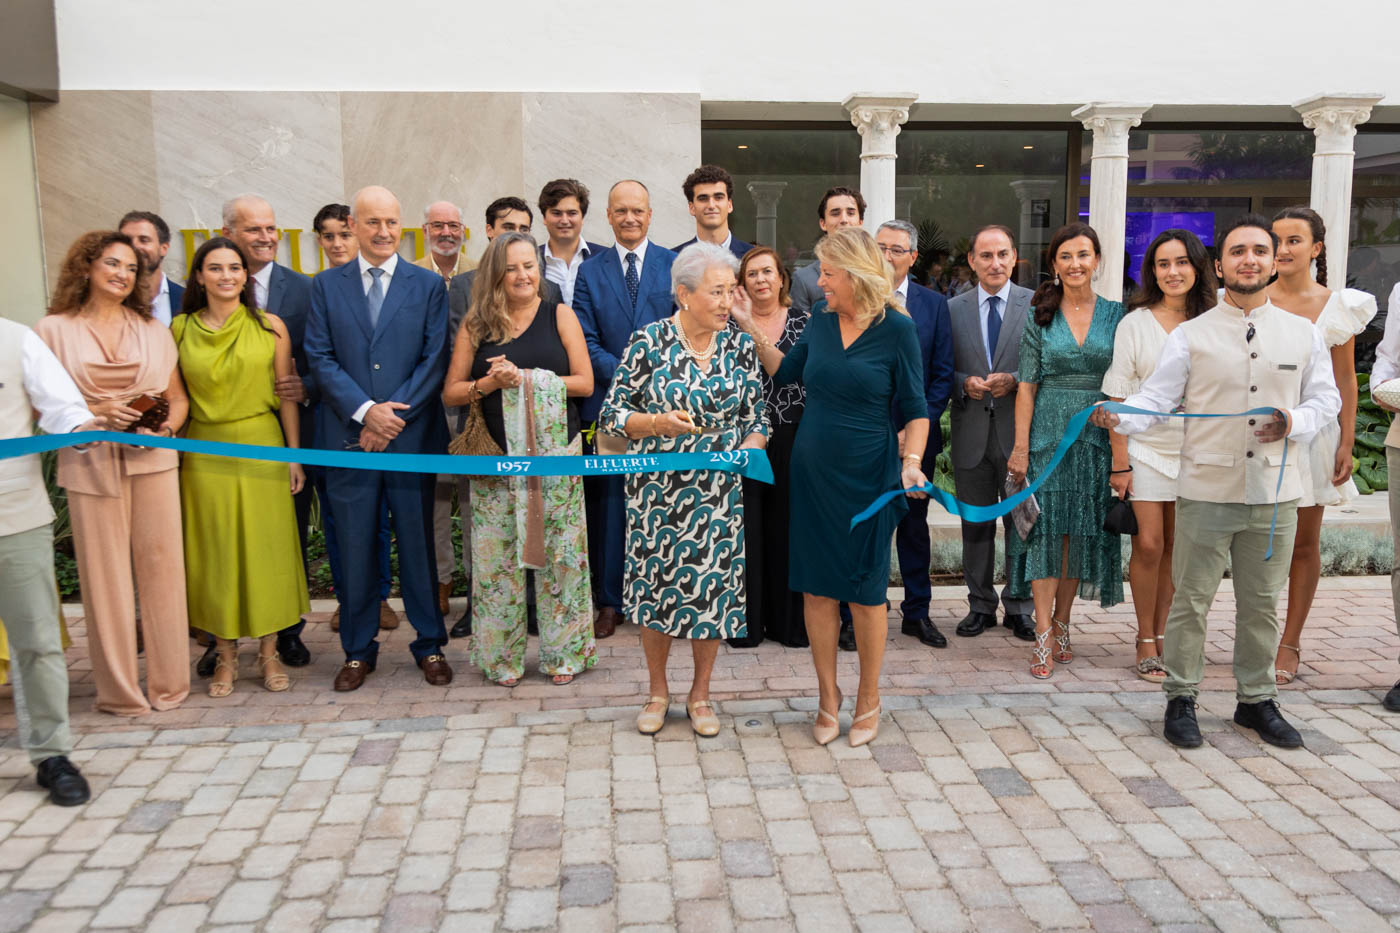 La alcaldesa destaca el “compromiso con Marbella y con la excelencia” del Hotel El Fuerte, reconvertido en un cinco estrellas tras una reforma integral